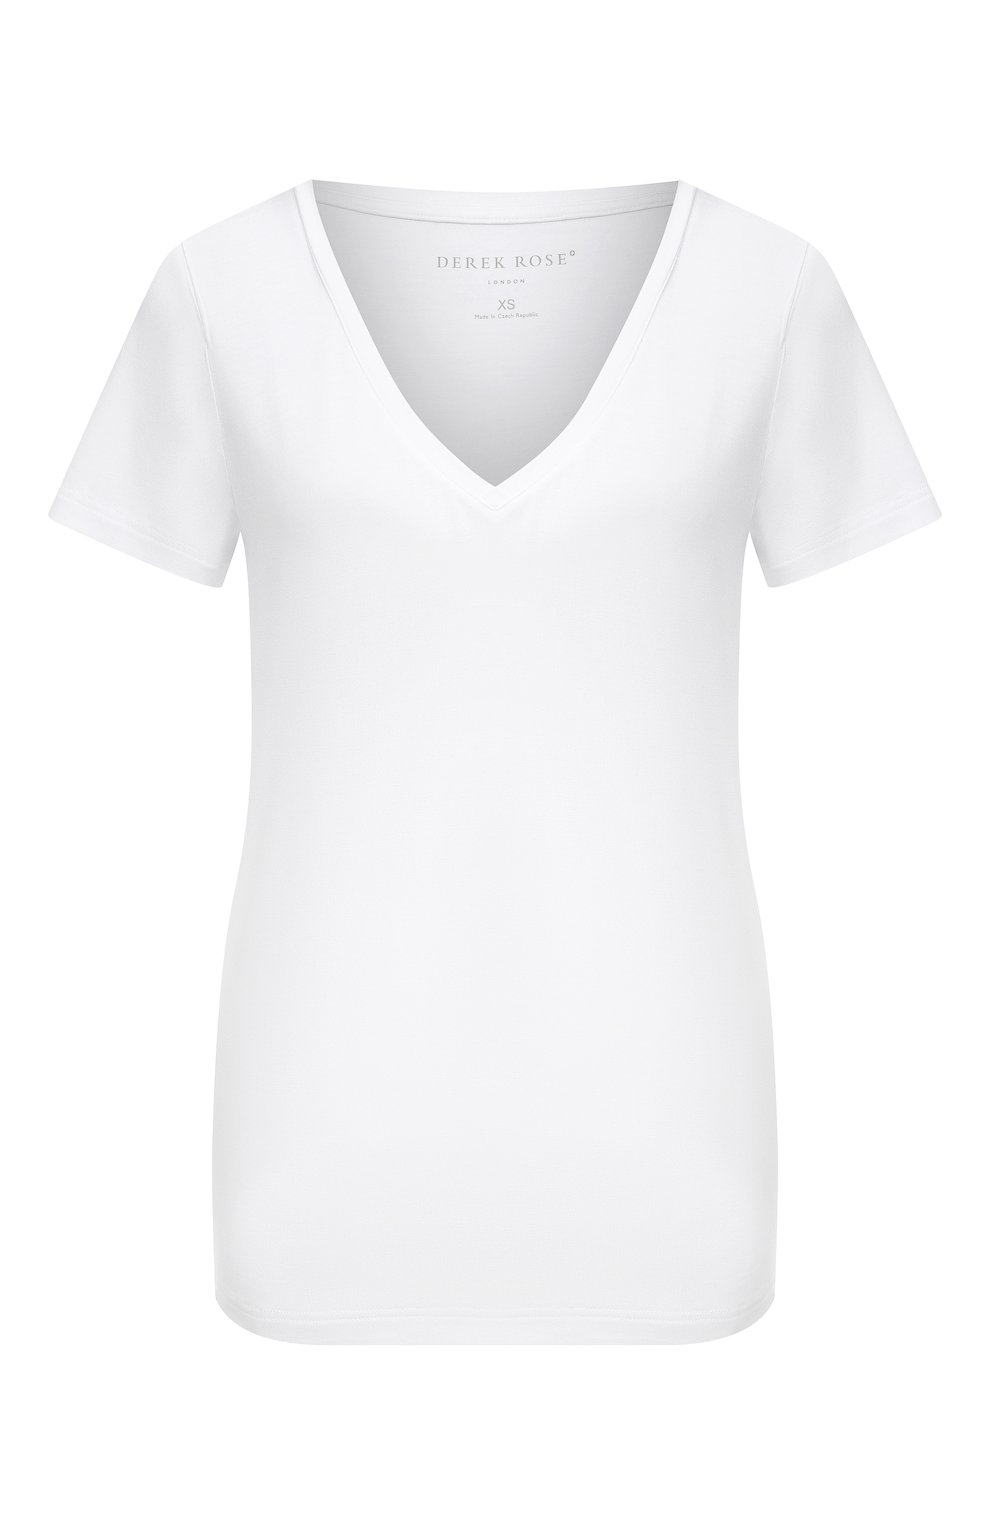 Фото Женская белая футболка DEREK ROSE, арт. 1281-LARA001 Чехия 1281-LARA001 